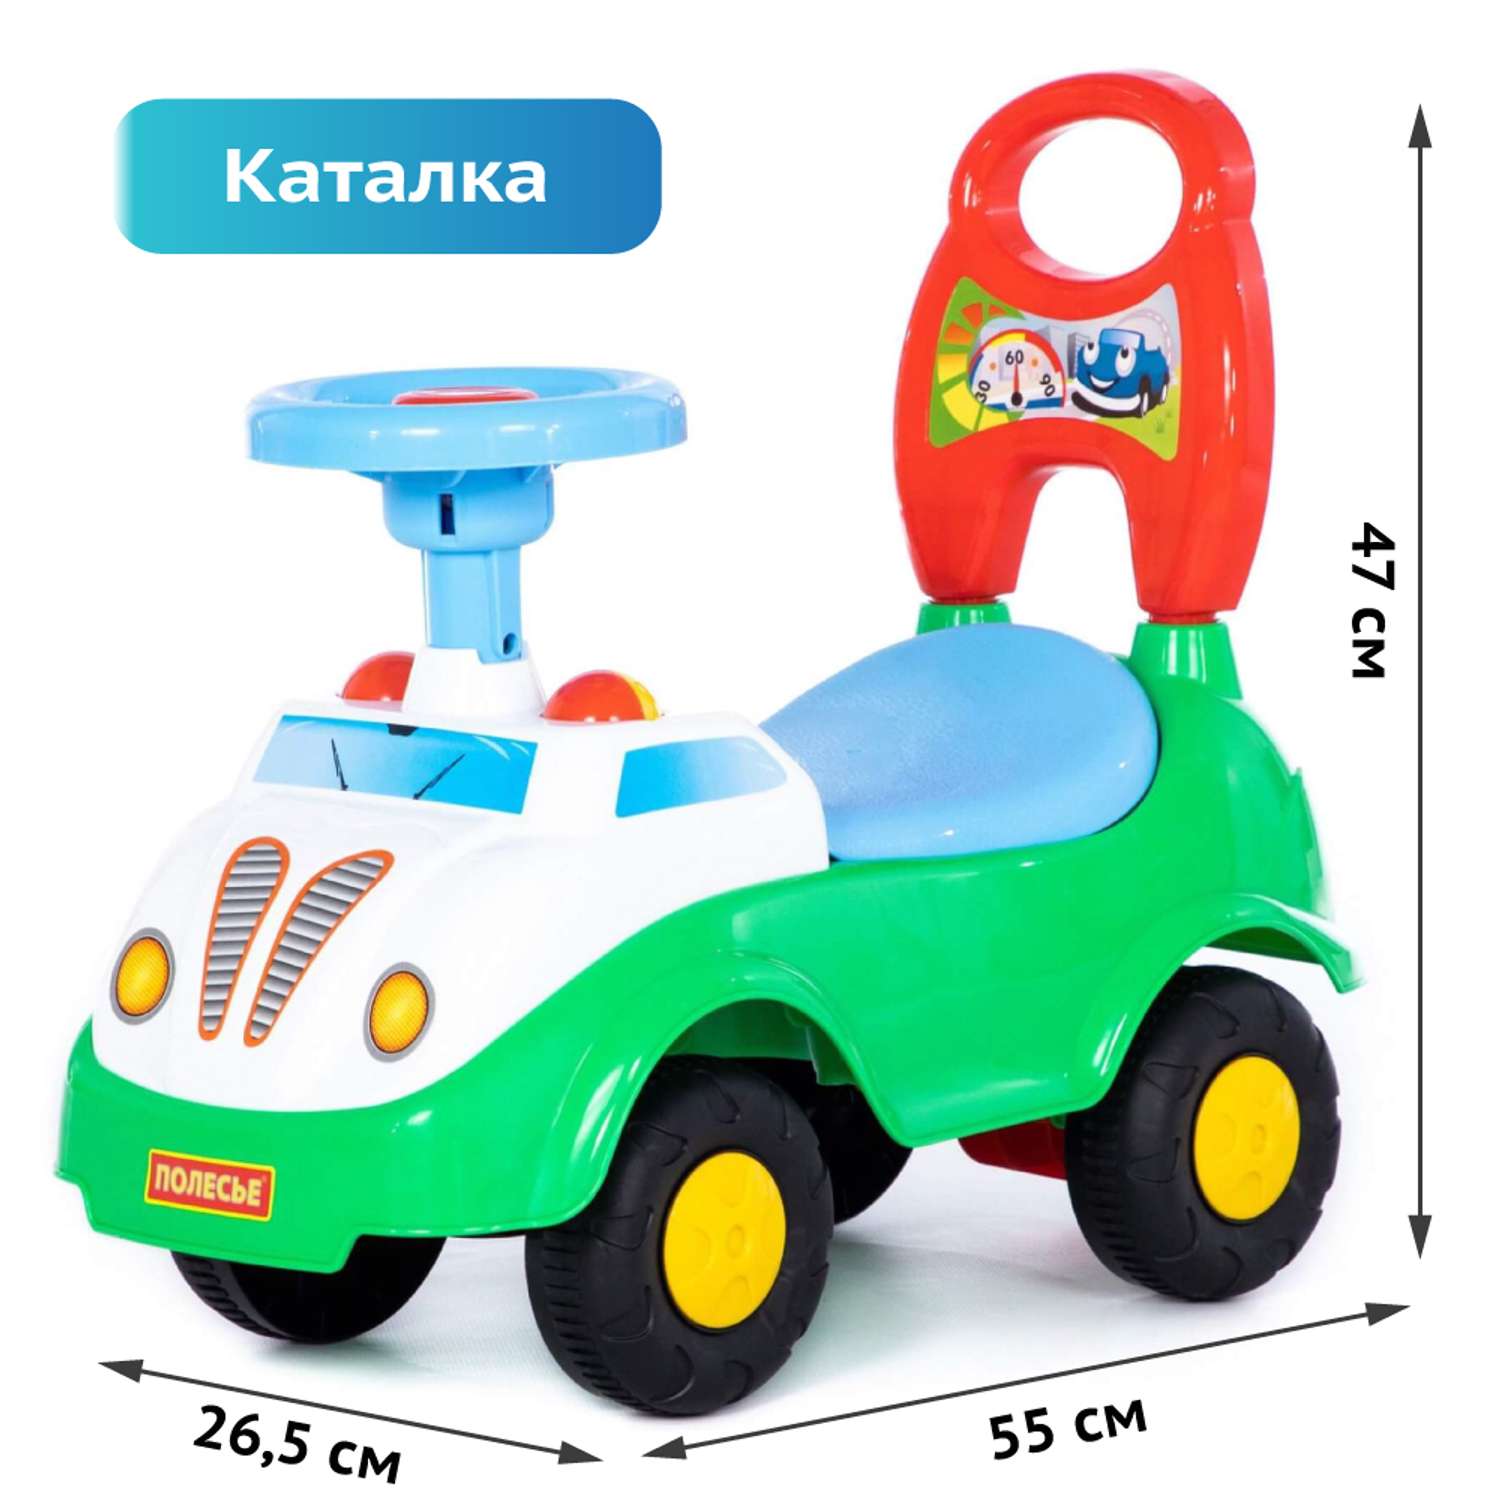 Машинка каталка Полесье детская игрушка толокар Ветерок - фото 1